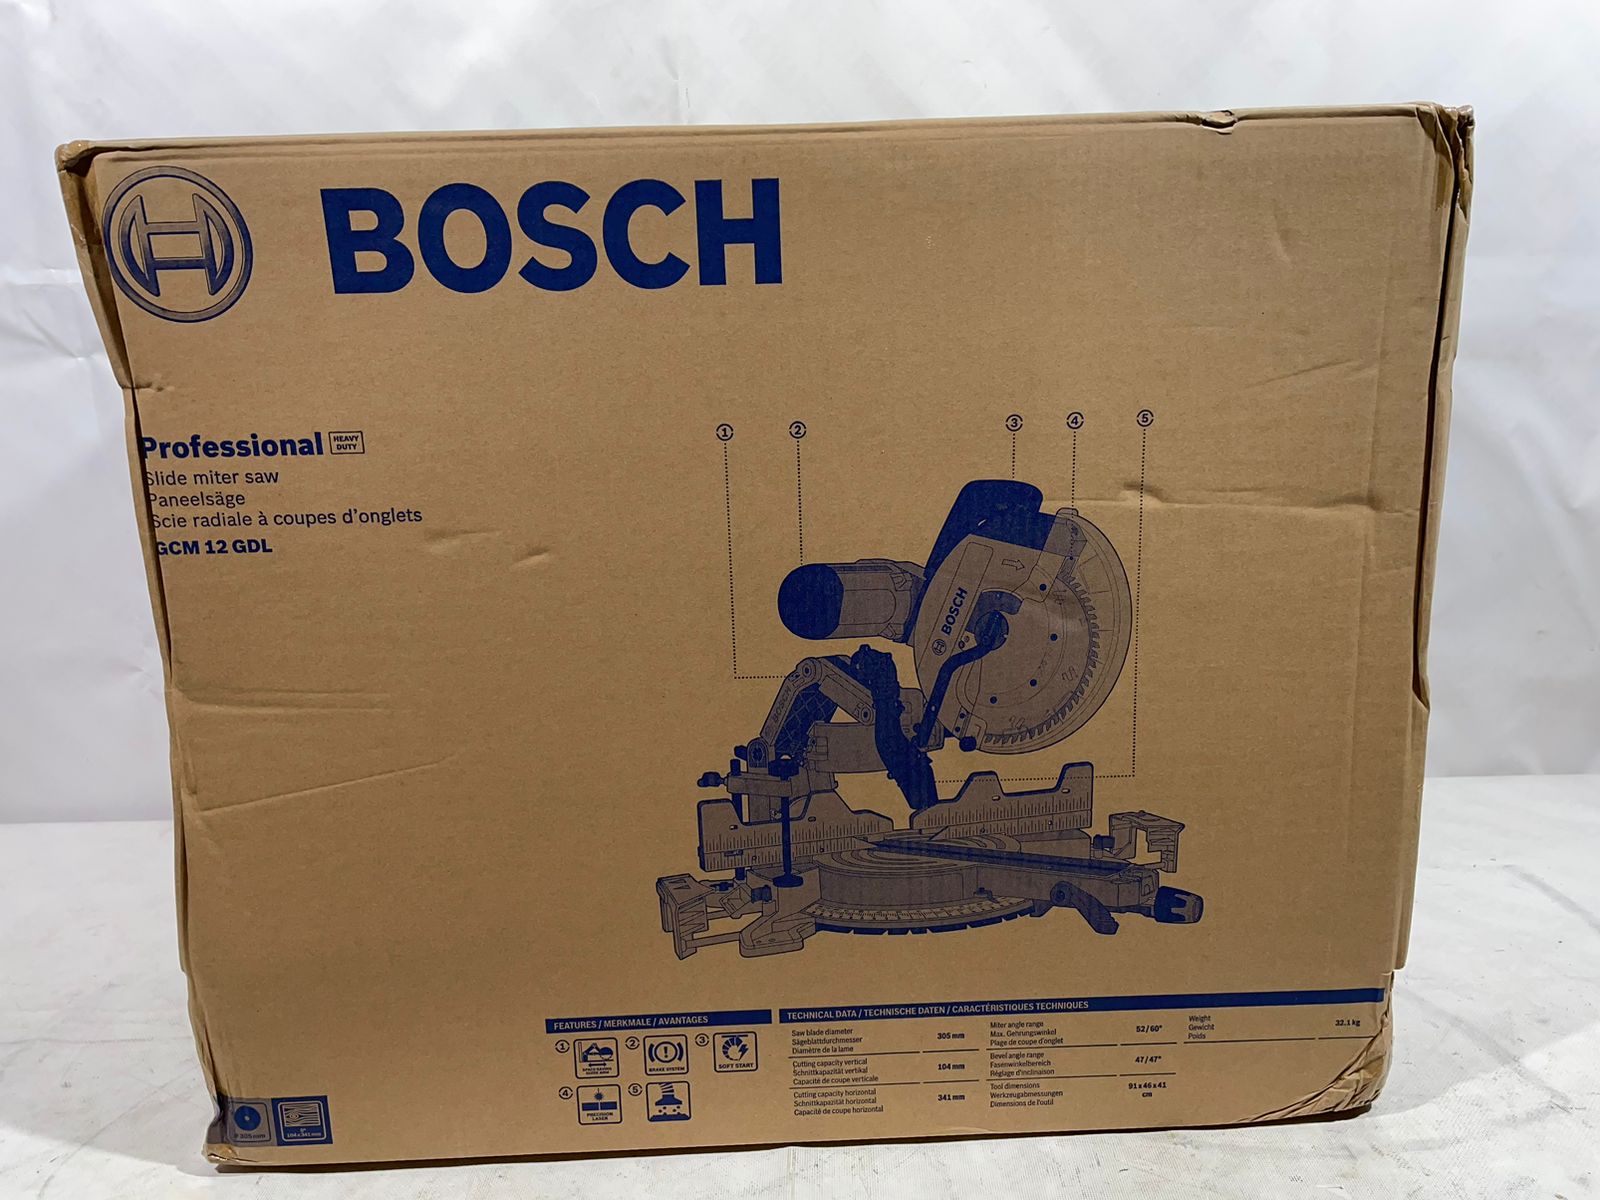  пила Bosch GCM 12 GDL  